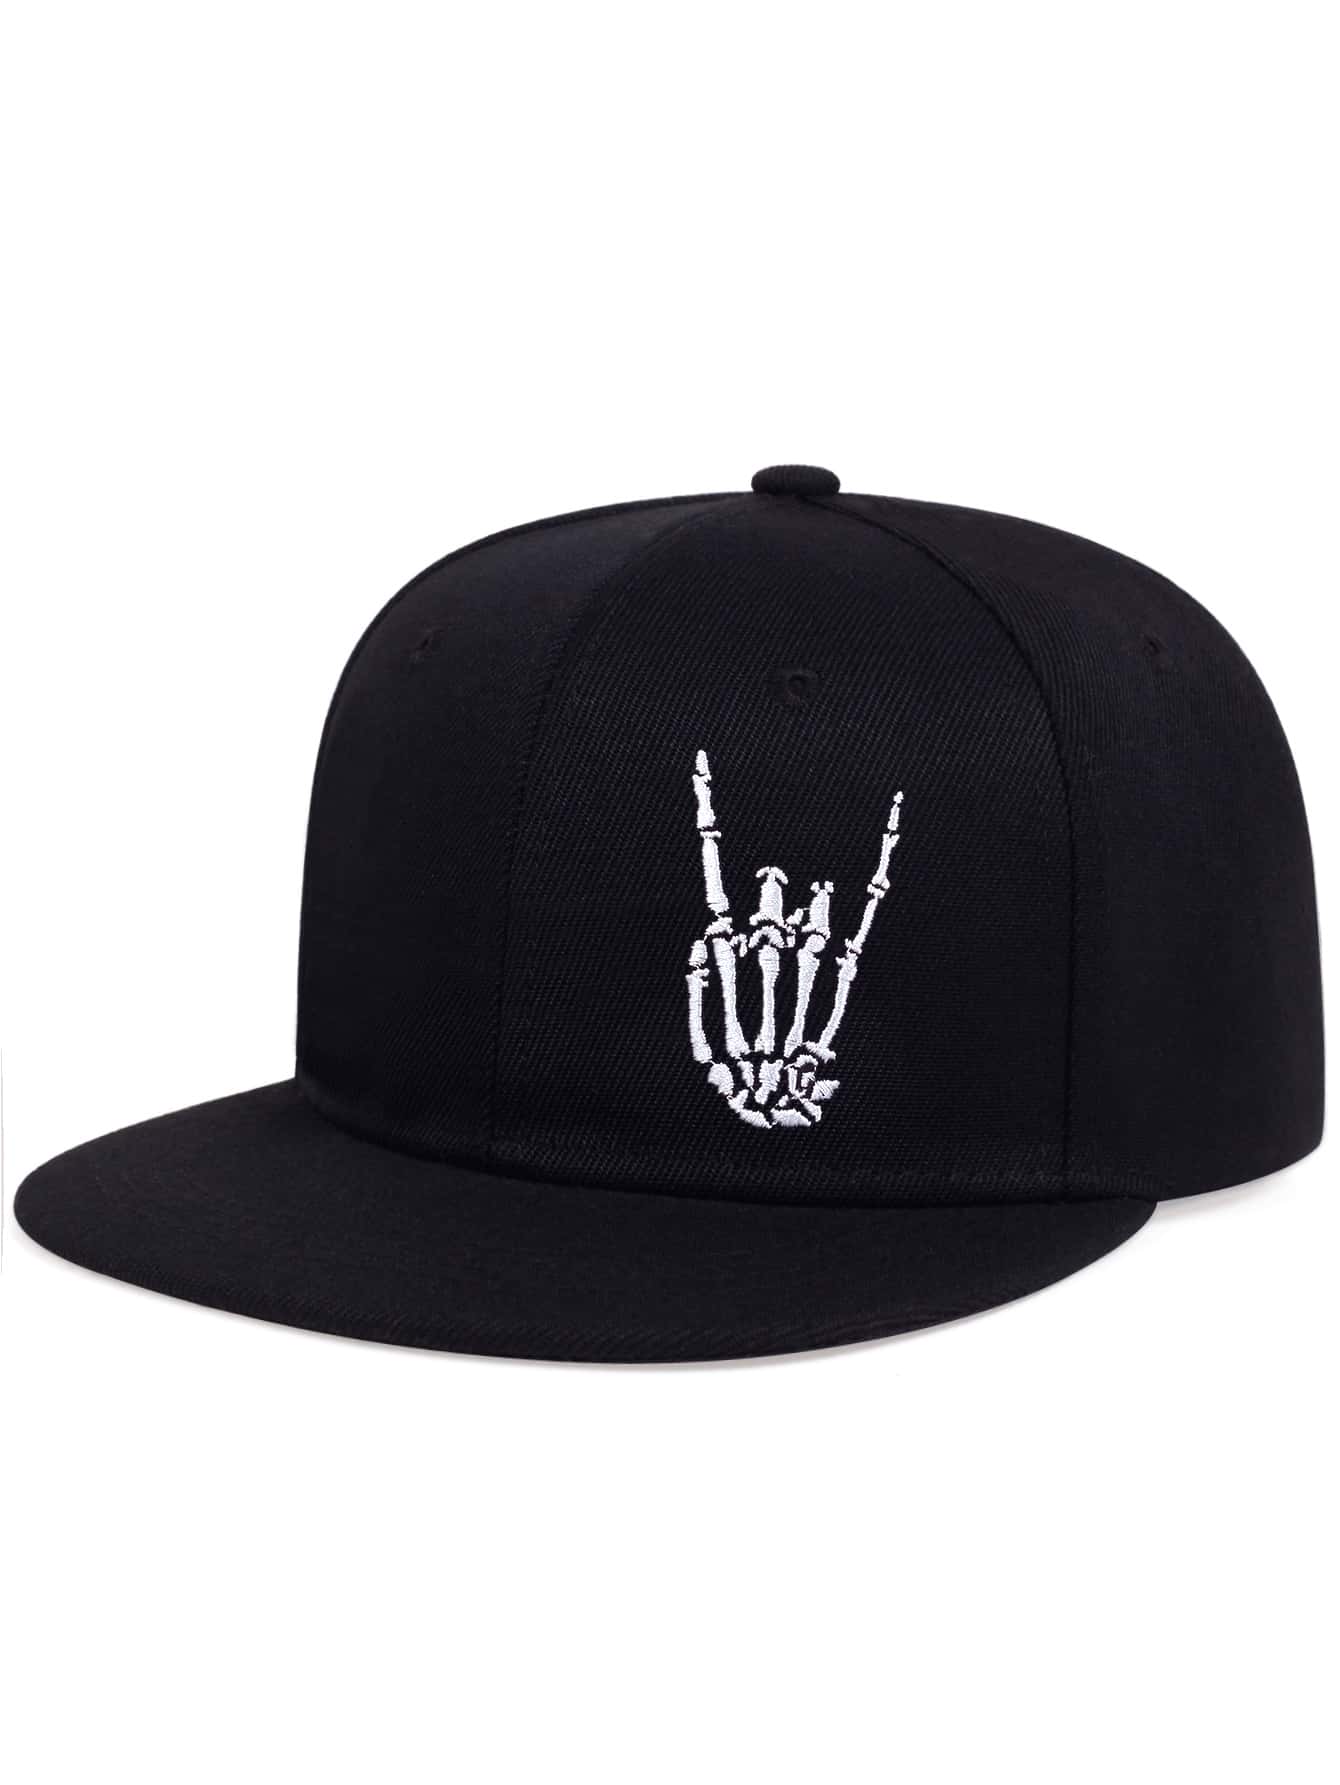 Men Skeleton Hand Embroidered Hip Hop Cap